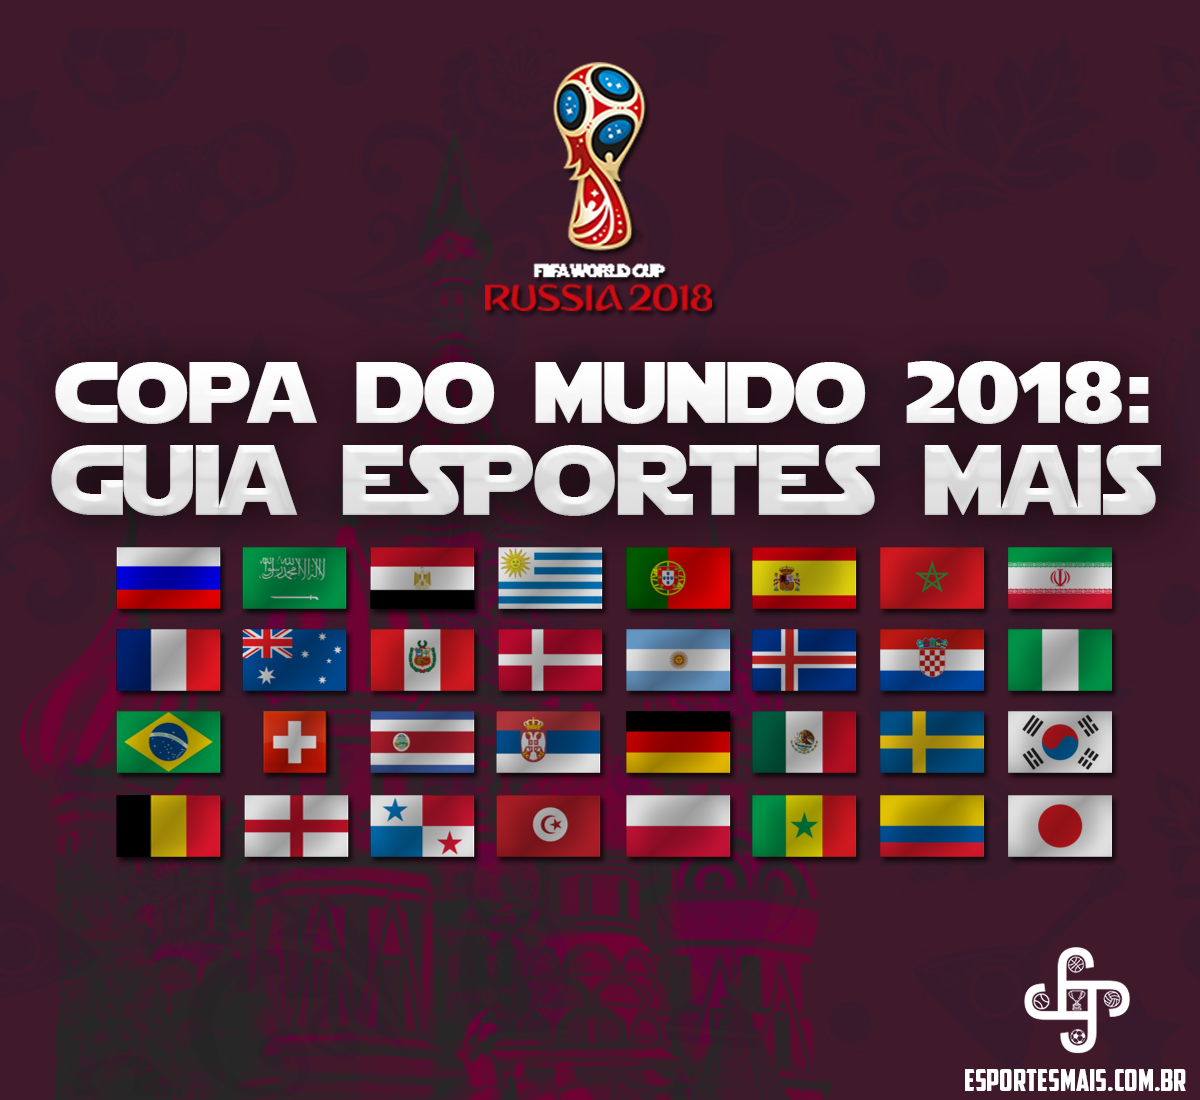  Especial Copa do Mundo 2018